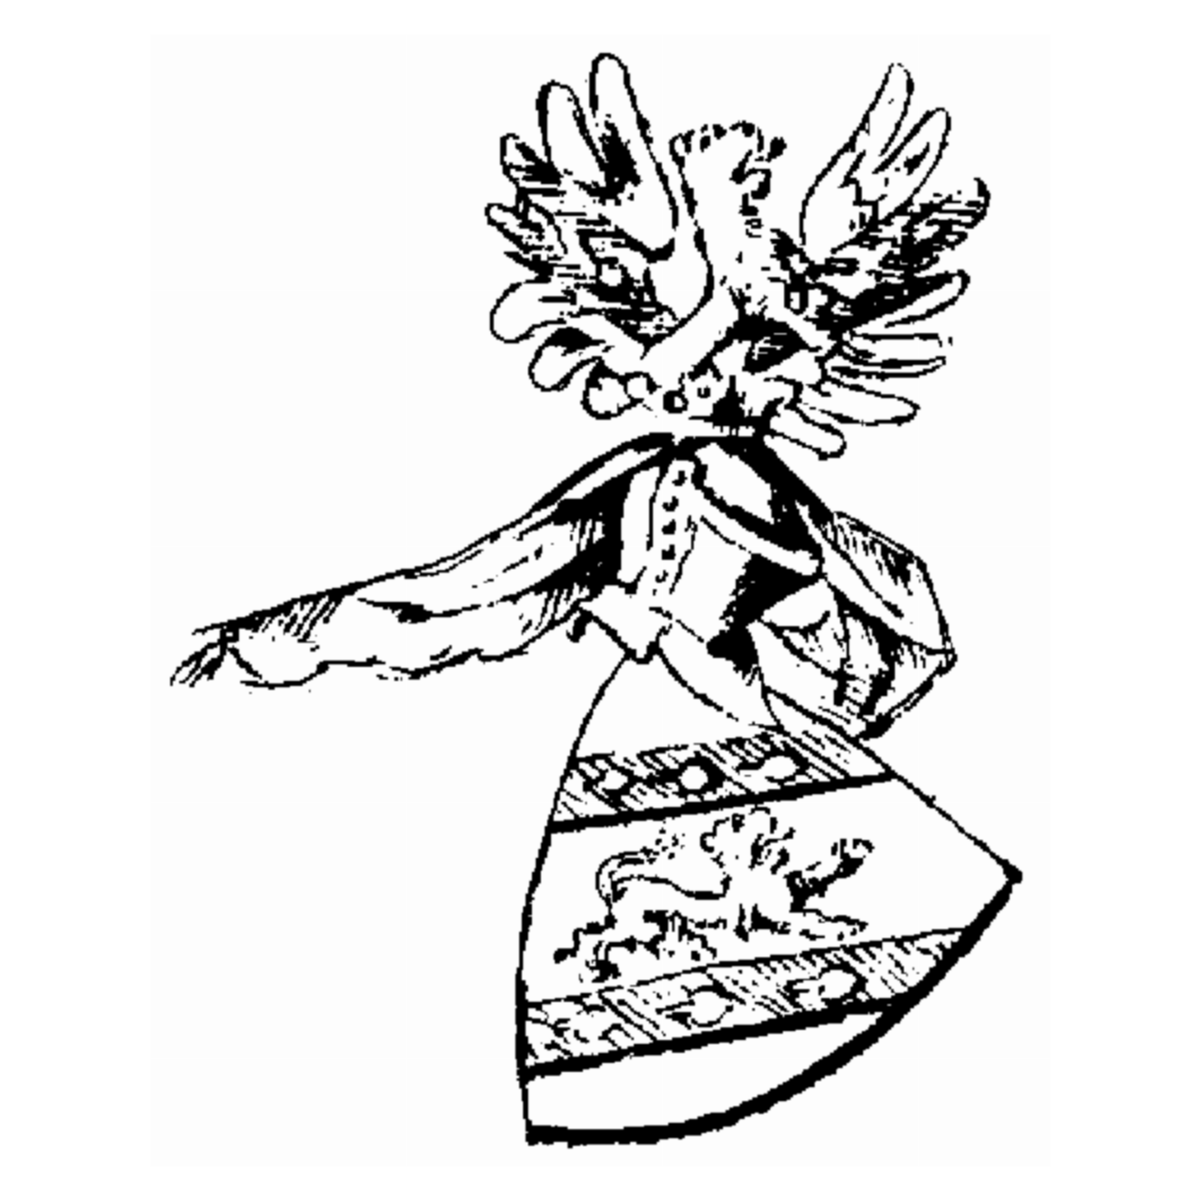 Coat of arms of family Vespermann